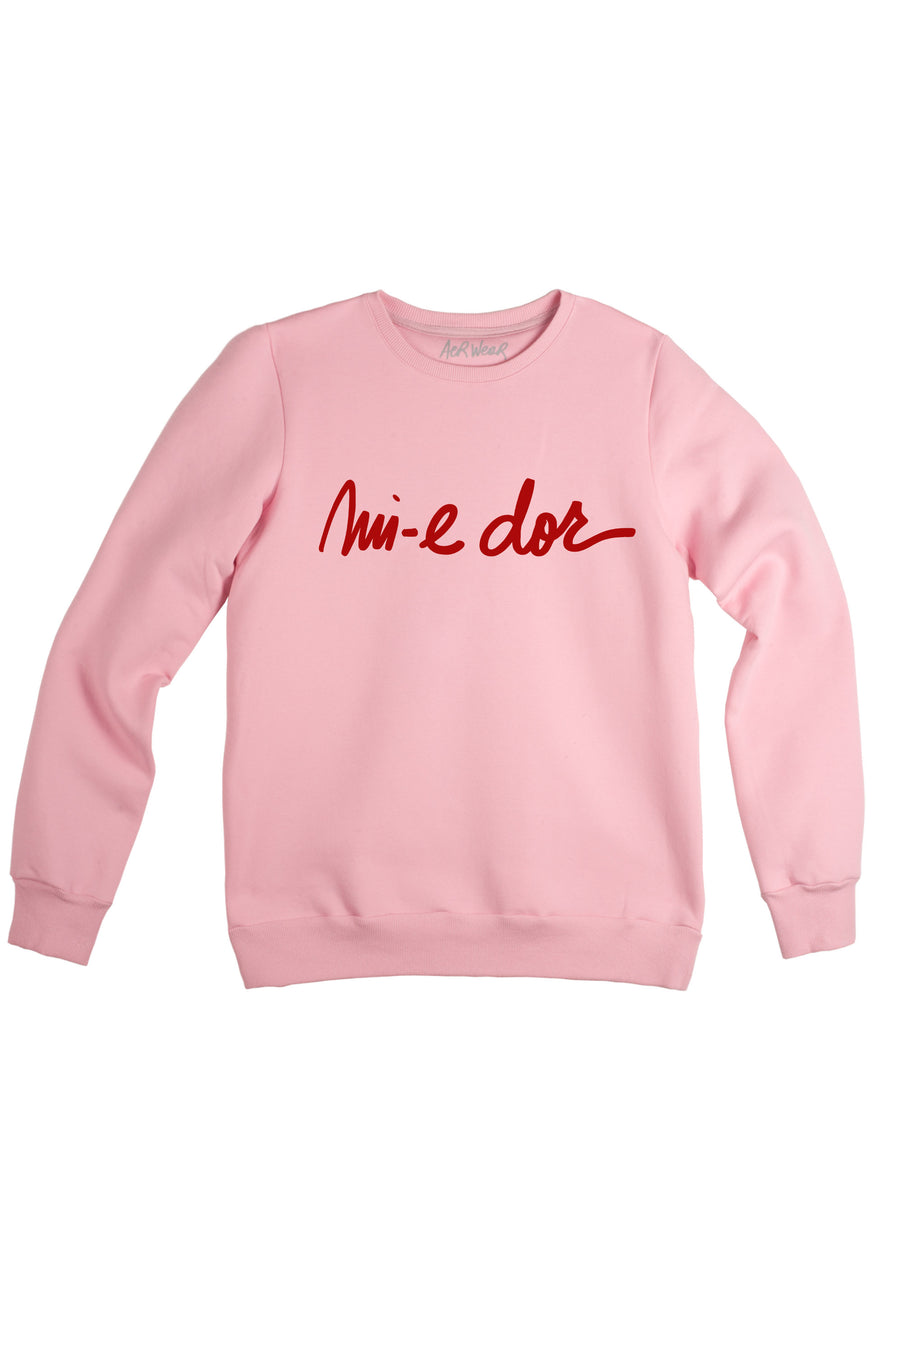 MI-E DOR sweatshirt